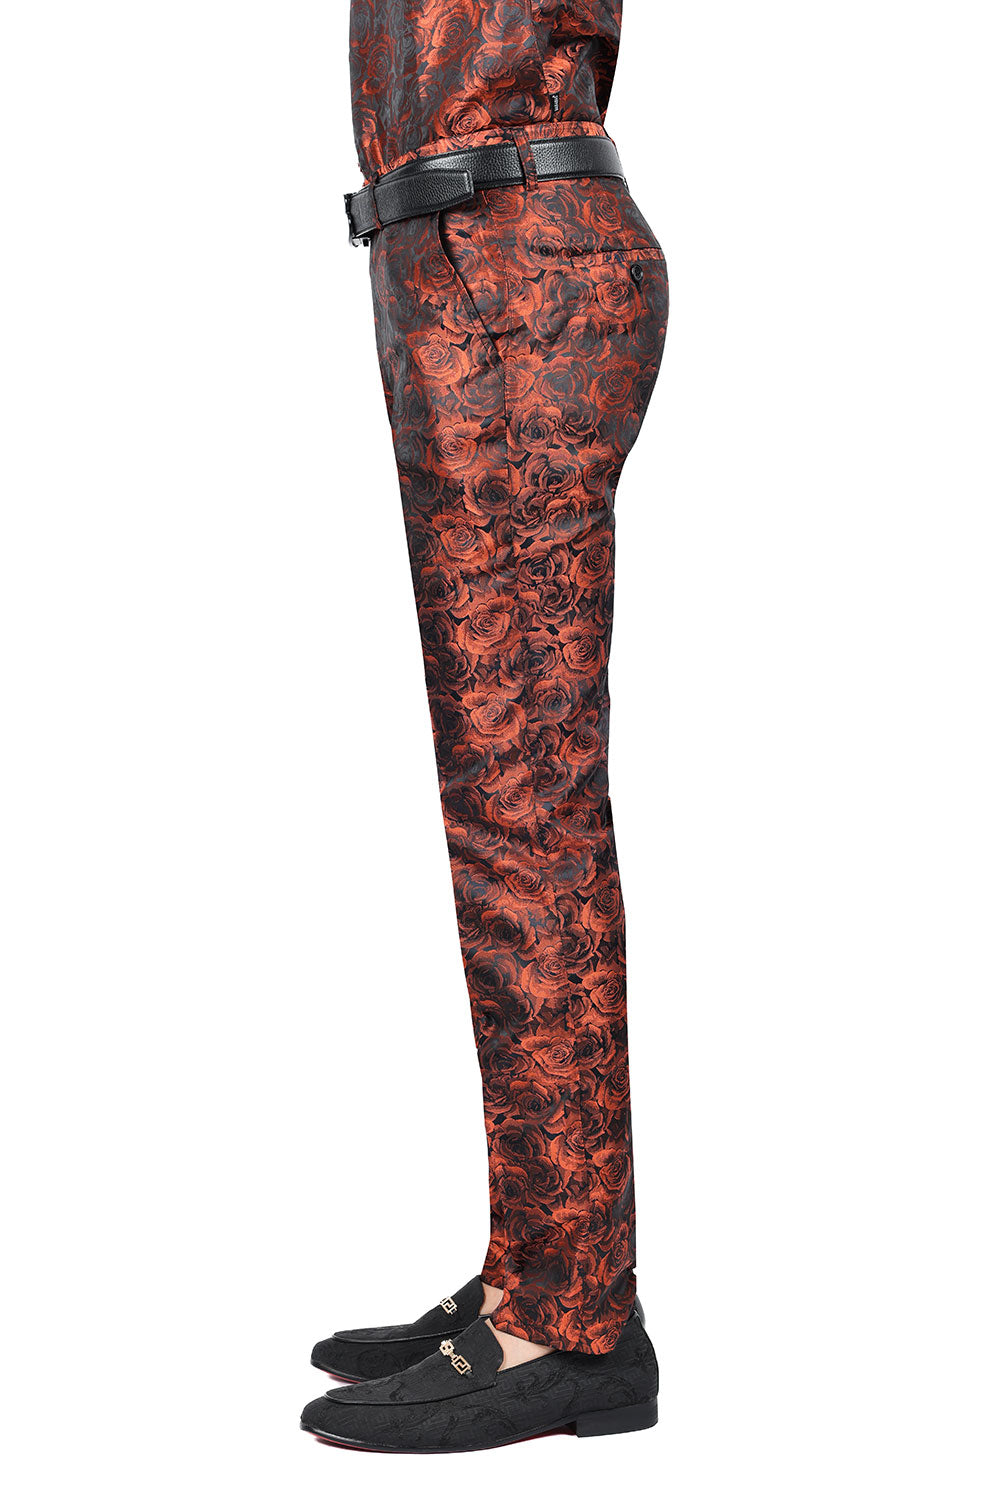 Barabas Men's Floral Rose Shiny Metallic Dress Pants 2CP03 Orange